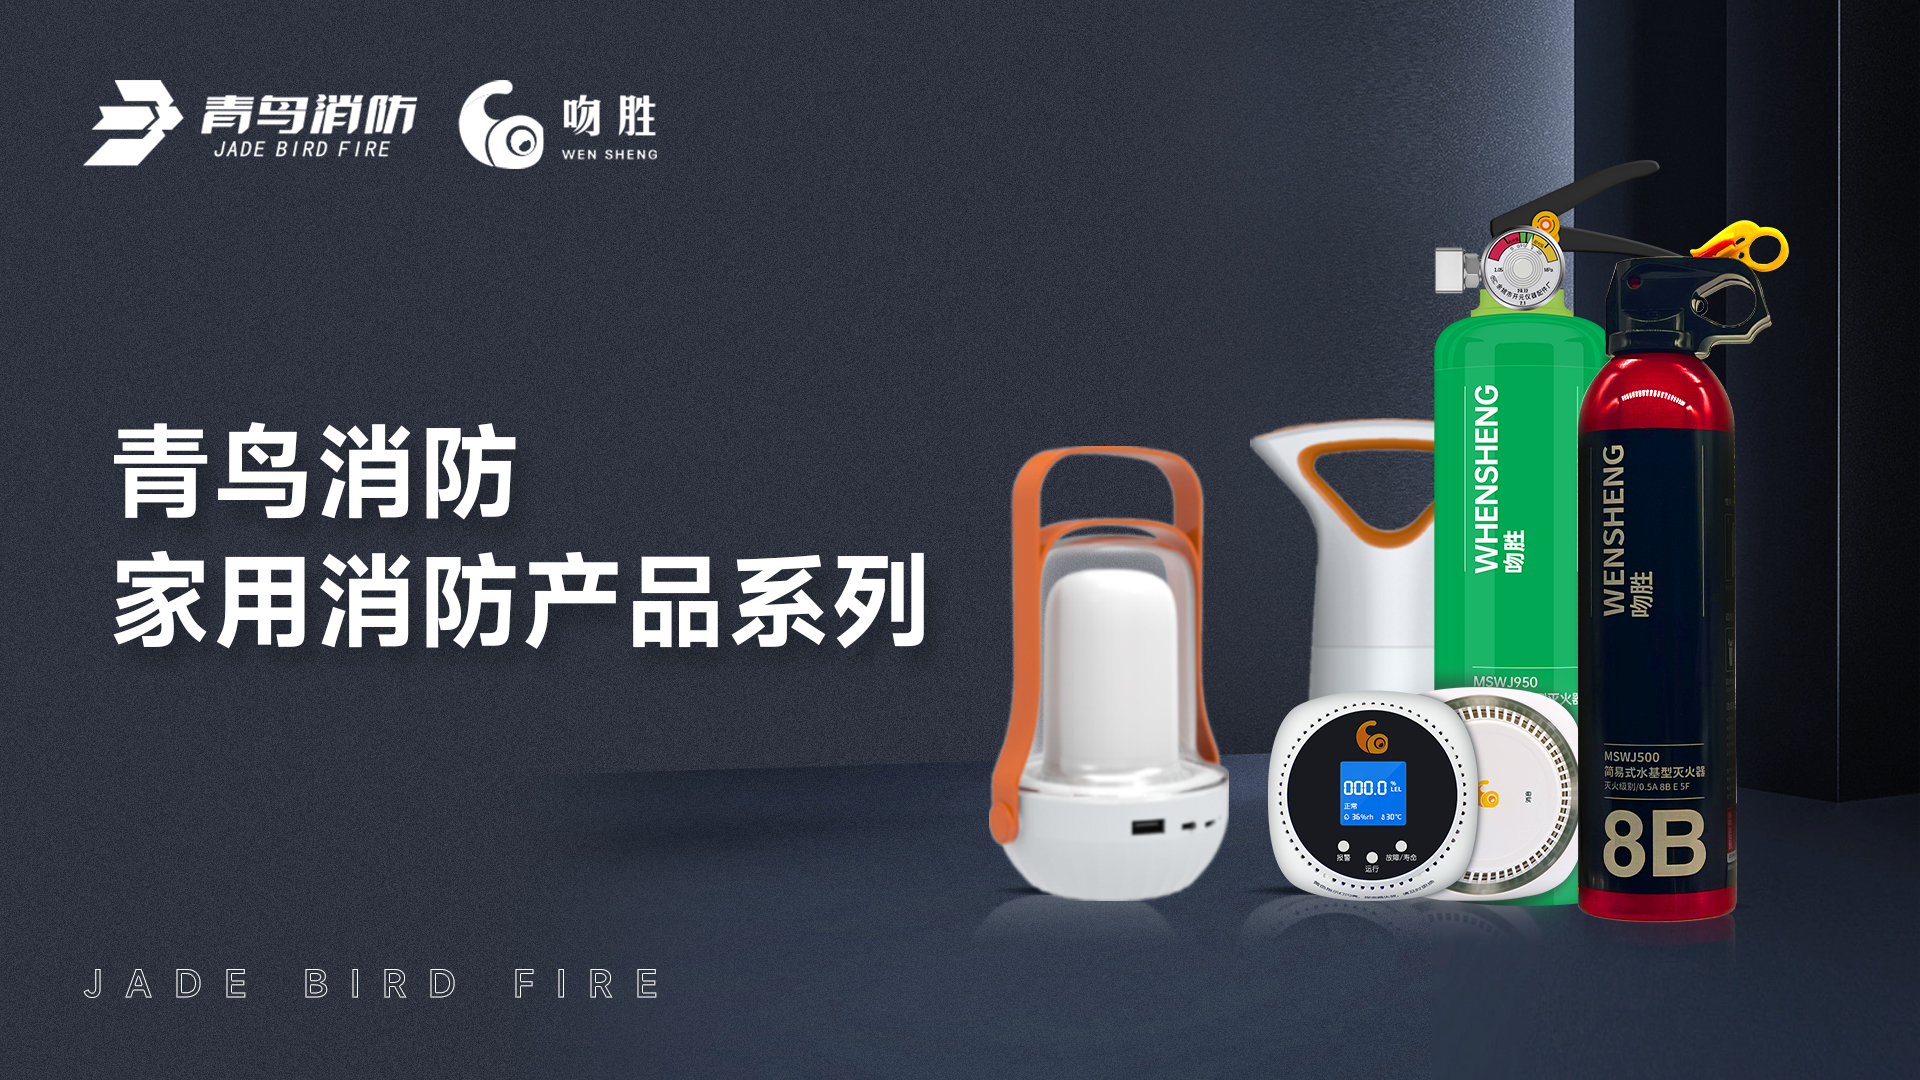 尊龙凯时人生就是博z6com — 家用消防产品系列解决方案